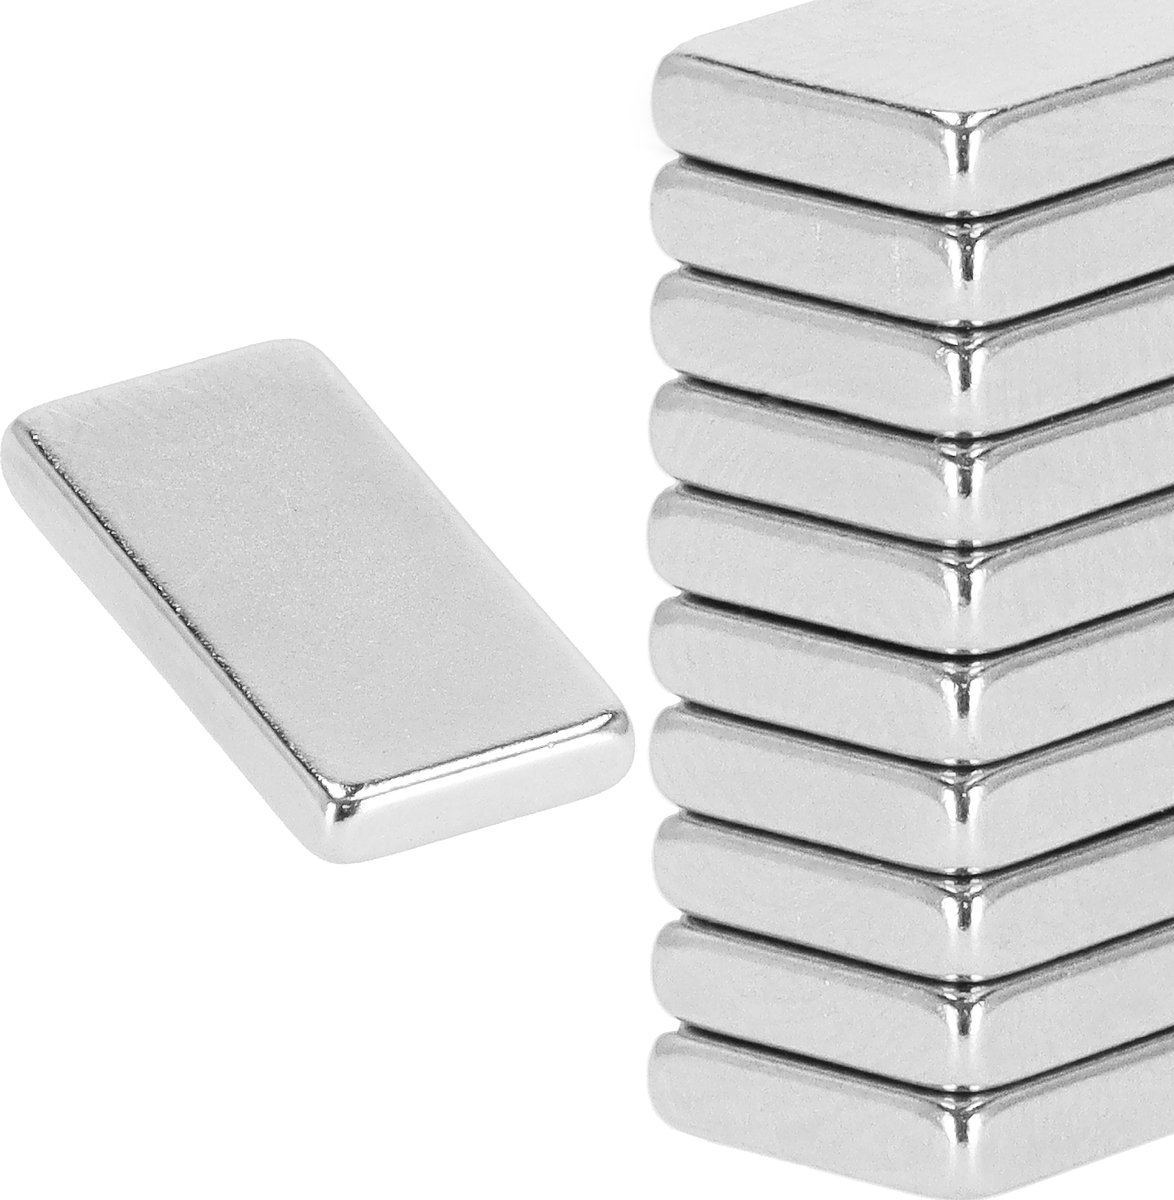 Springos Magneten - Koelkastmagneten - Neodymium Magneten - Rechthoek - 20 x 10 x 2.5 mm - Zilver